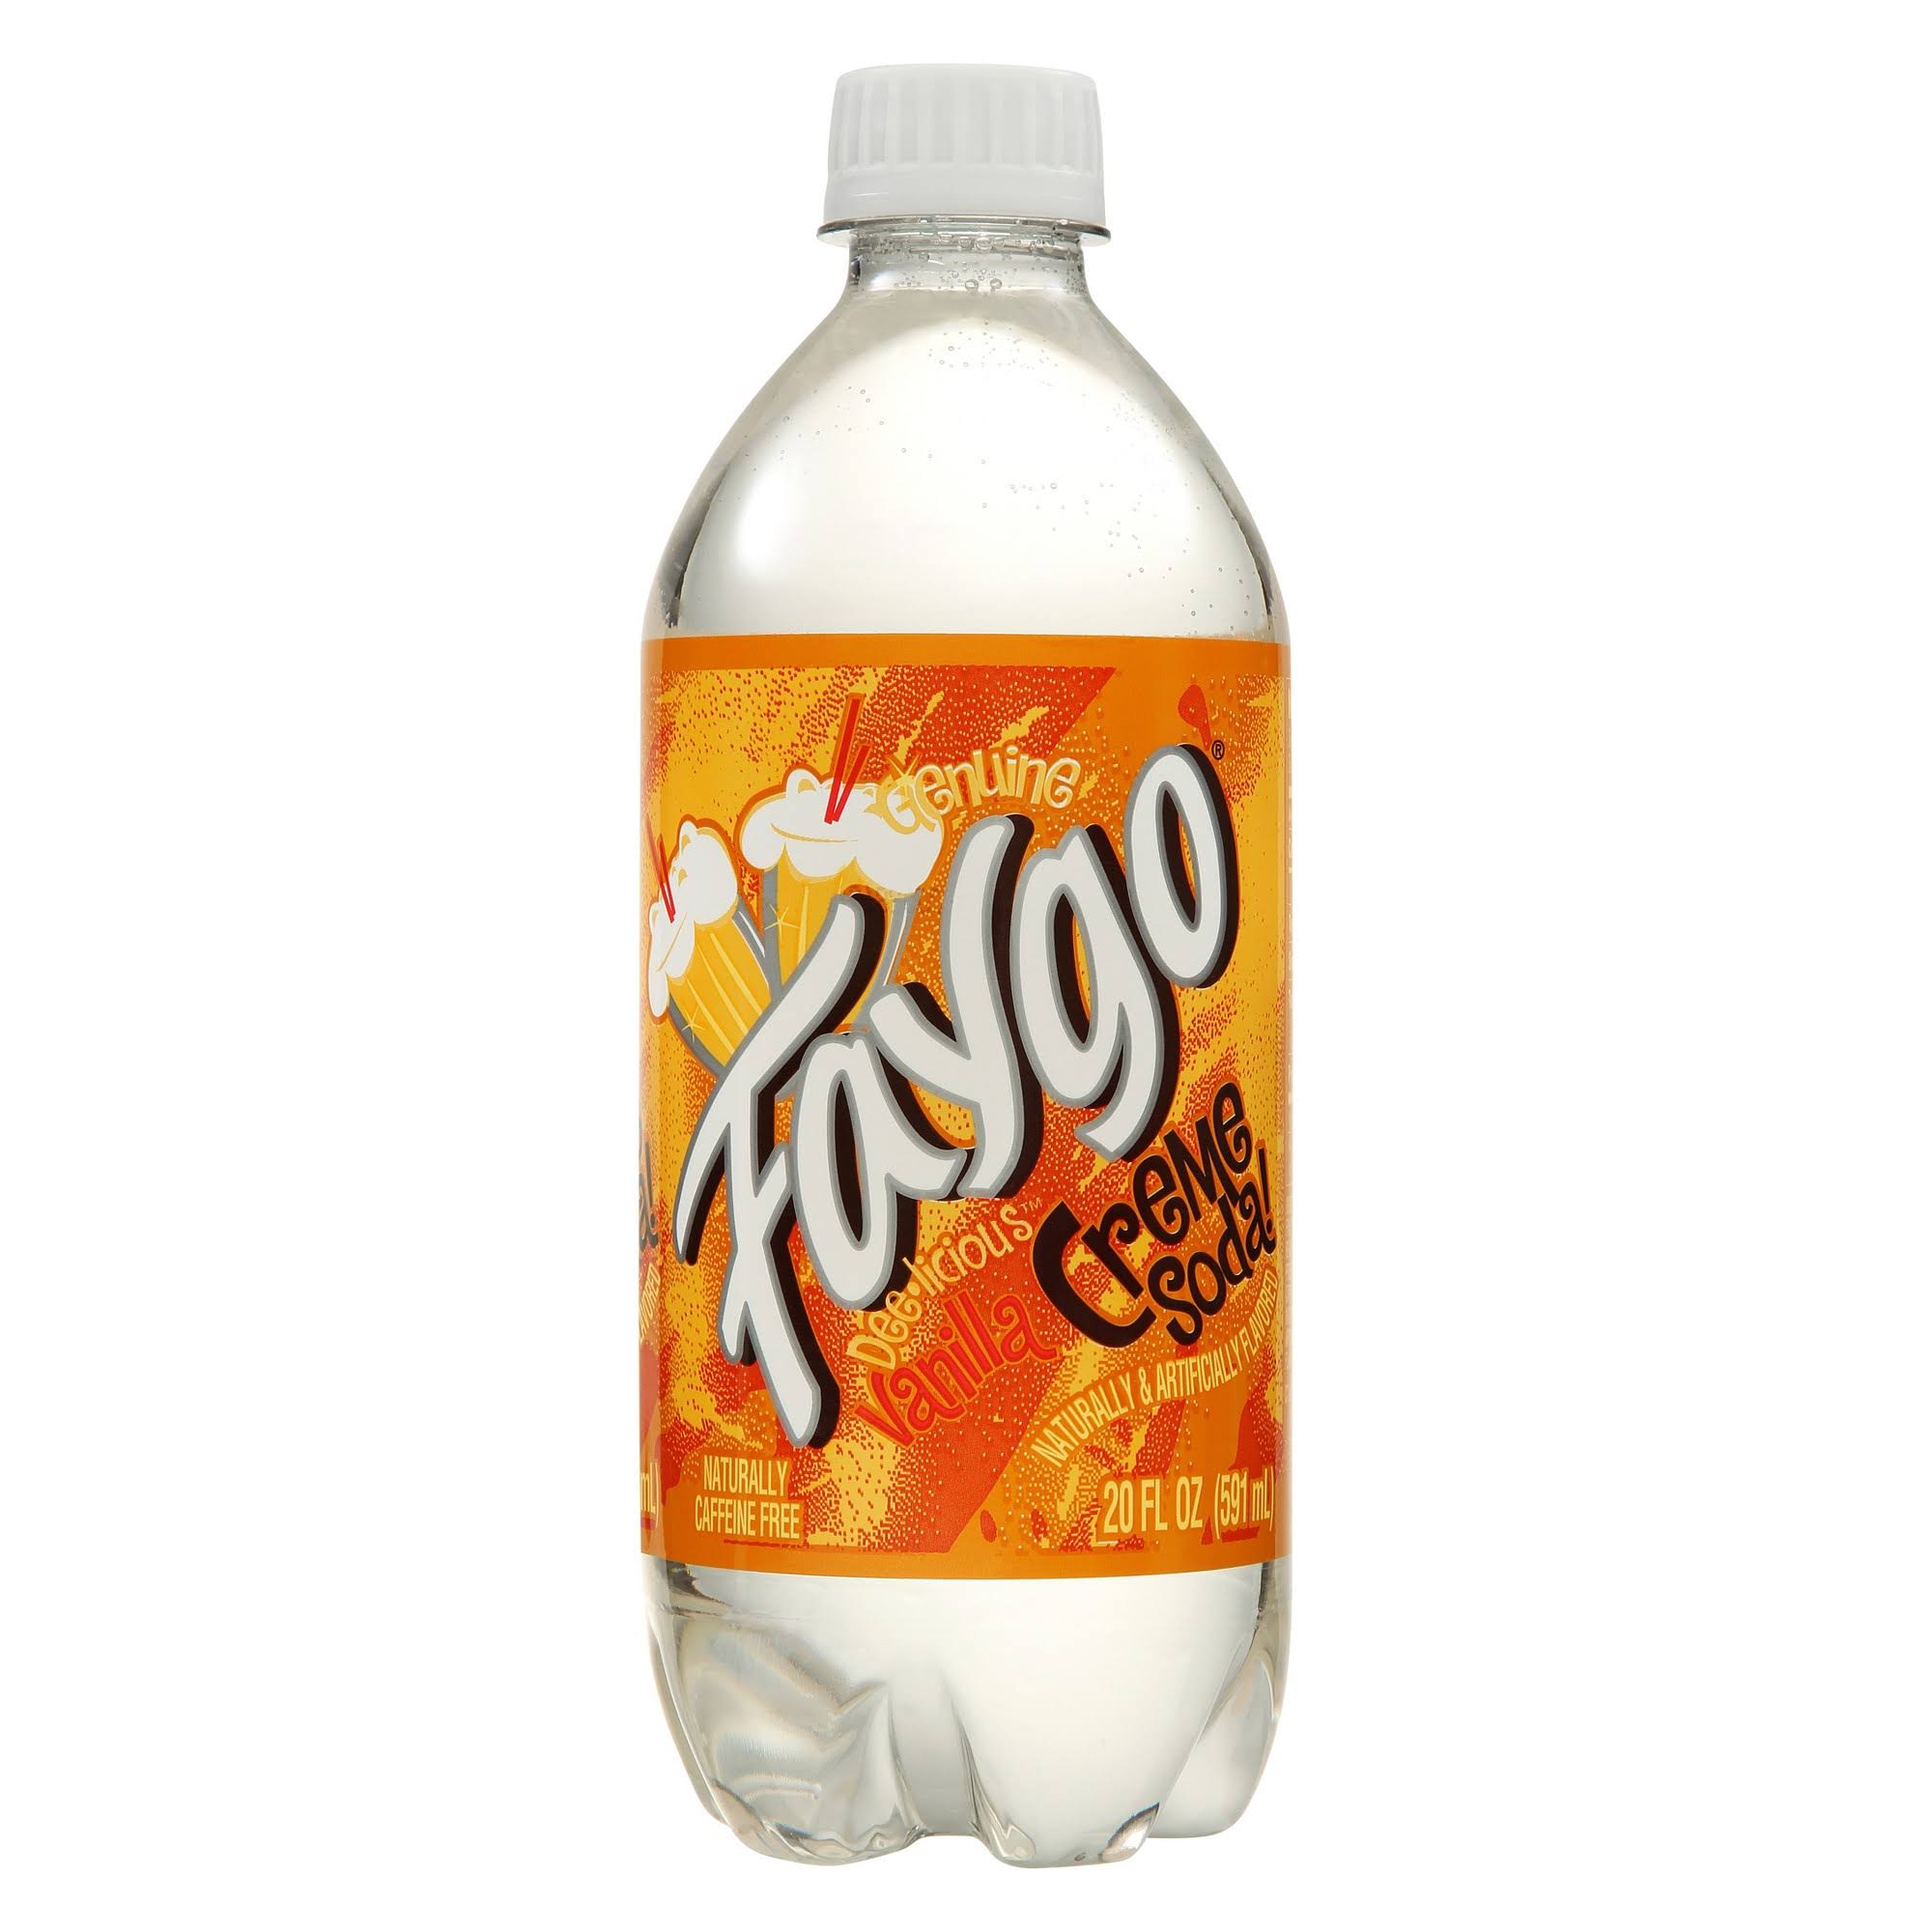 Faygo Cream Soda - Vanilla, 20oz